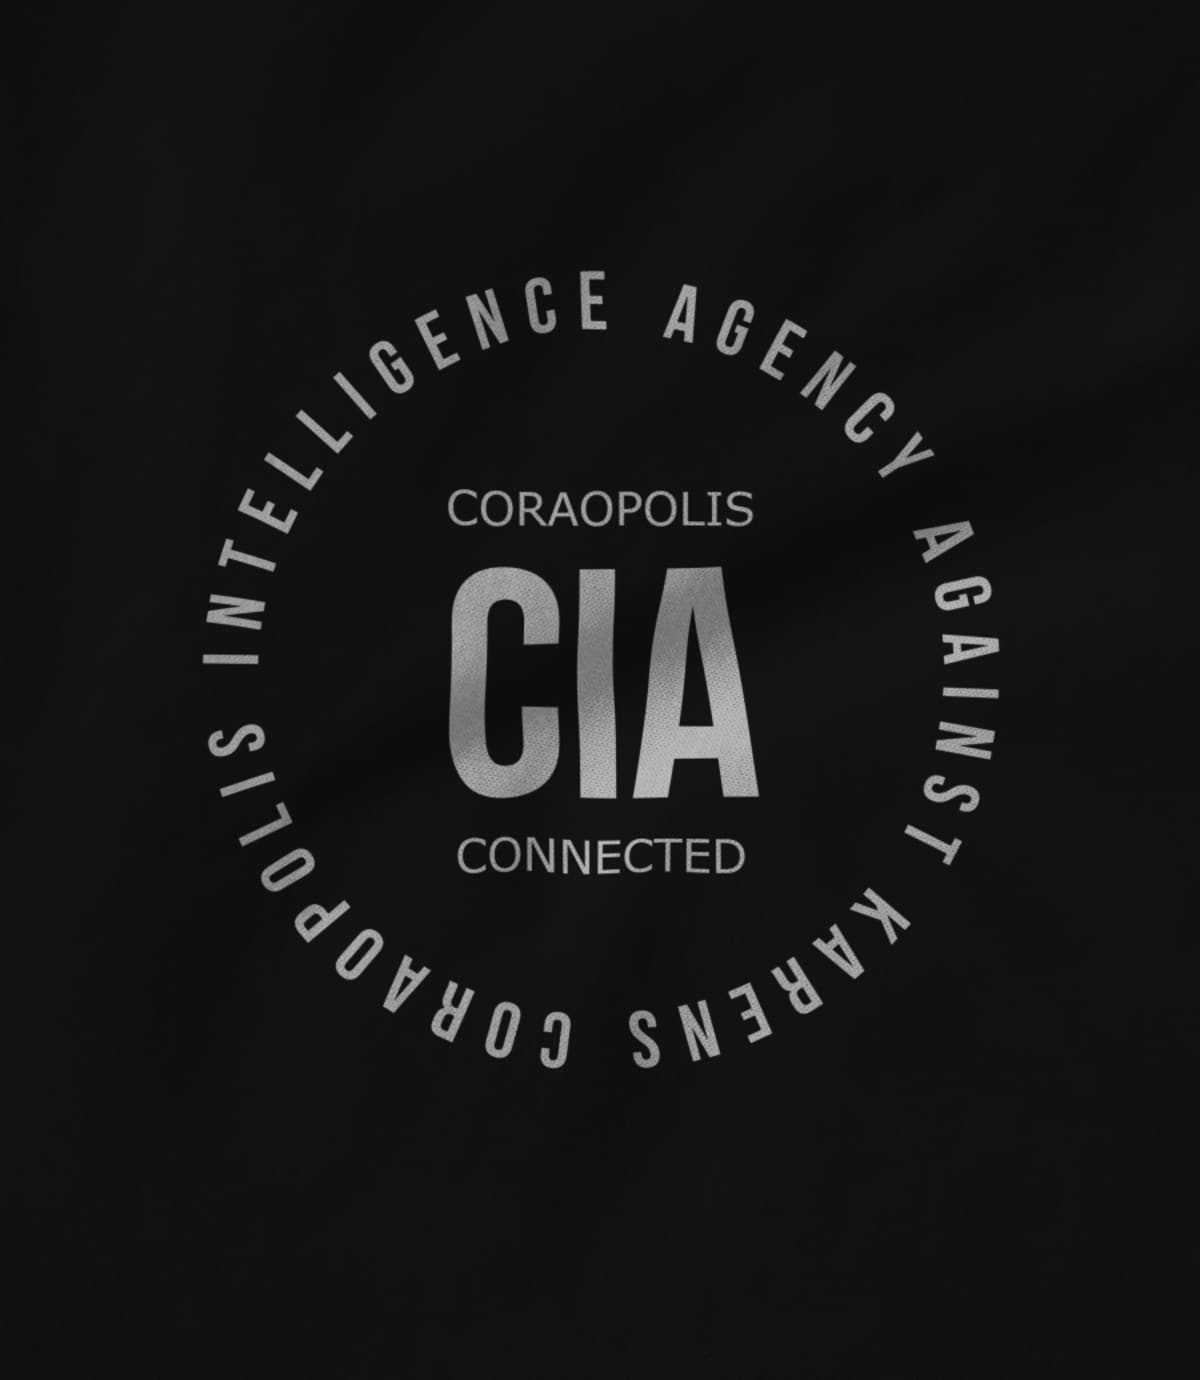 Coraopolis connected coraopolis intelligence agency against karens 1627492470